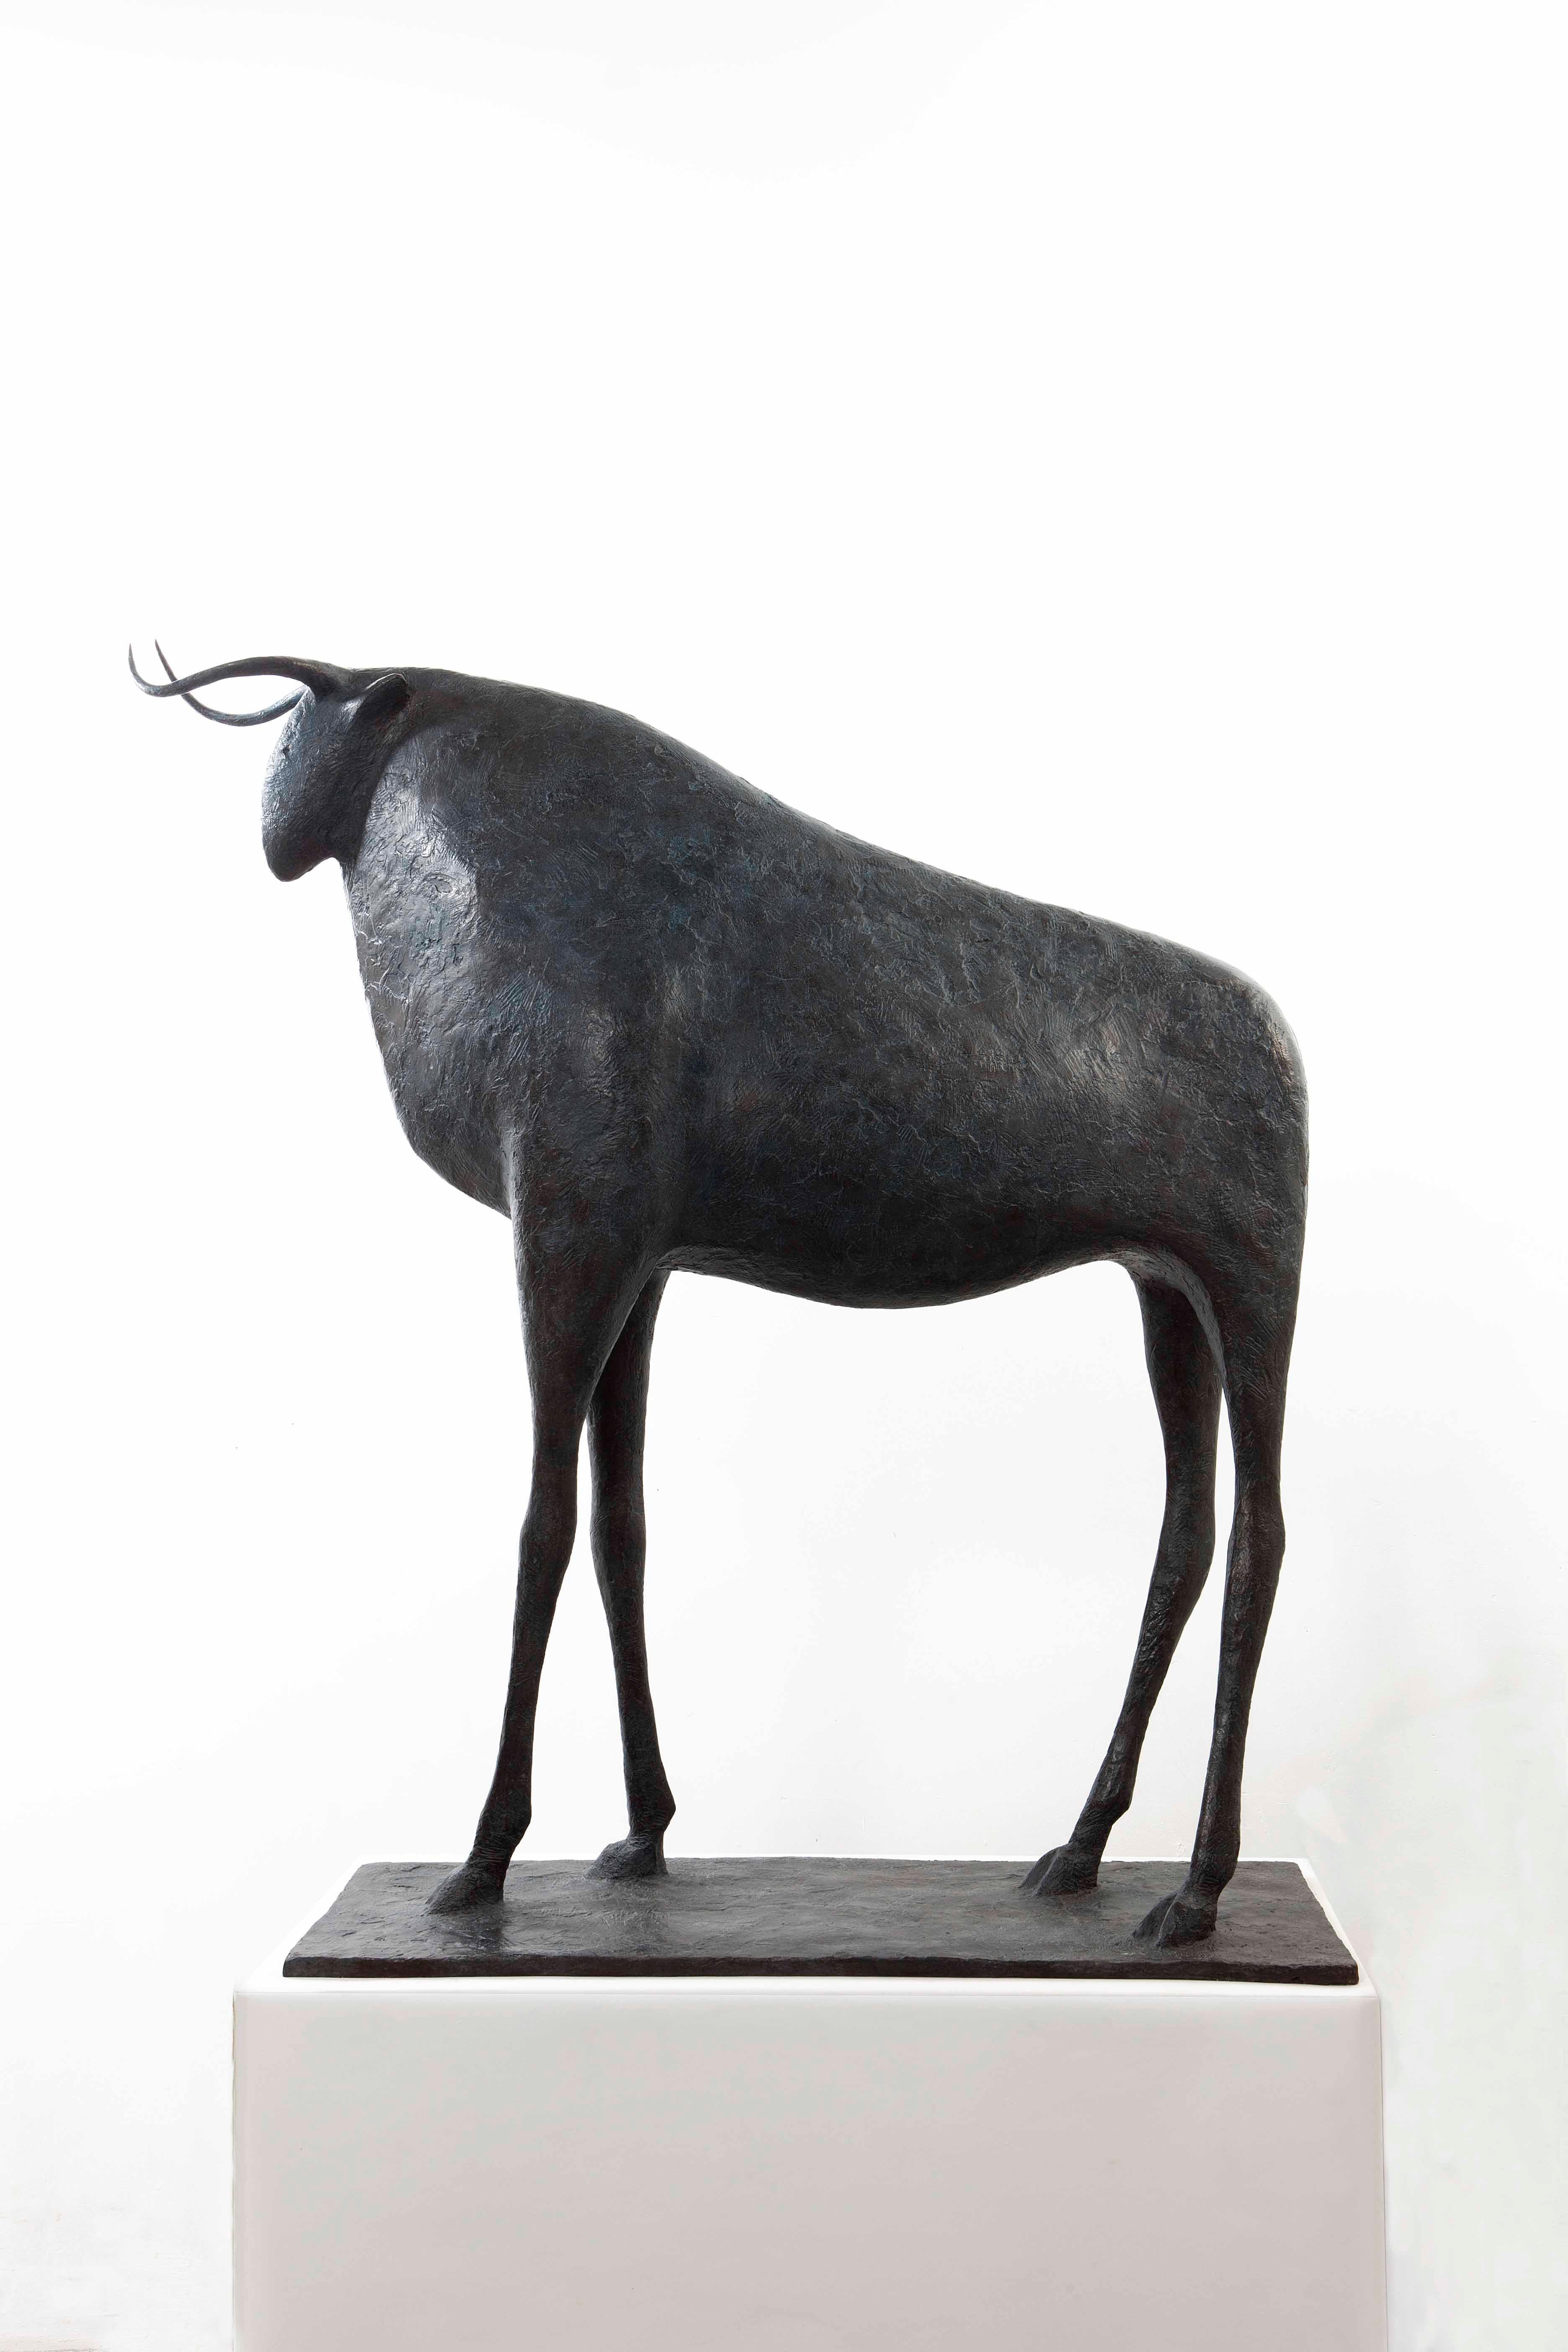 Großer Stier, Bronzeskulptur des französischen zeitgenössischen Künstlers Pierre Yermia.
120 cm × 100 cm × 34 cm. Limitierte Auflage von 8 Exemplaren und 4 Probedrucken, jeweils signiert und nummeriert.
"Der Stier ist das einzige männliche Tier in